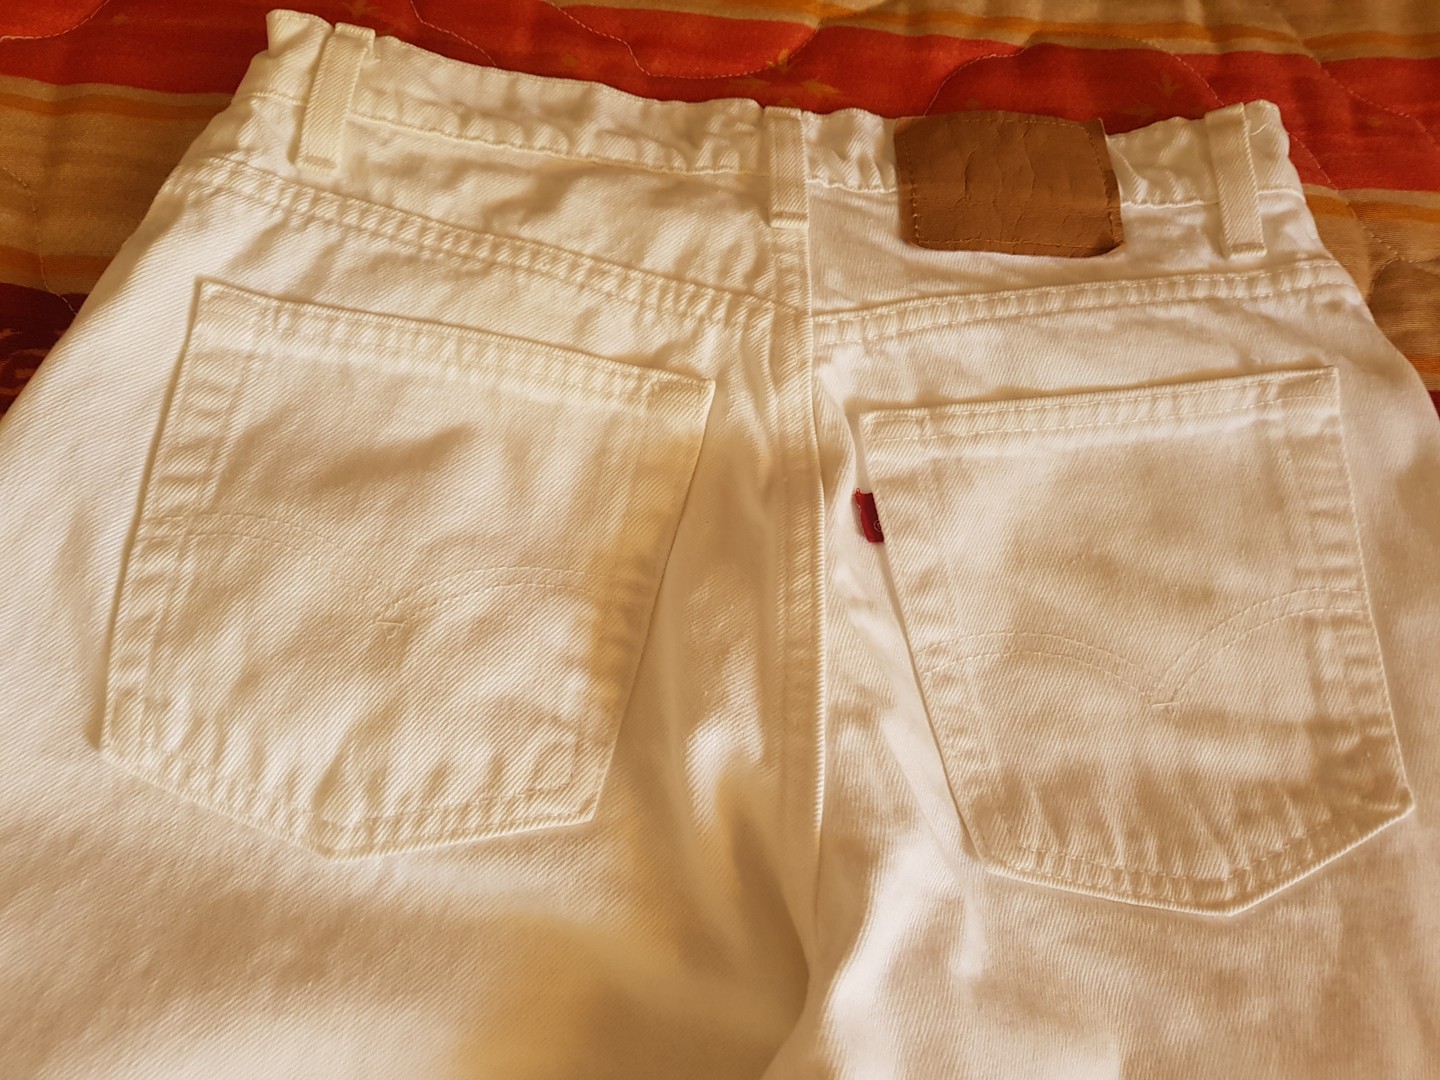 ropa para mujer - Pantalón blanco tela de jeans de algodón, marca Levi's. 0